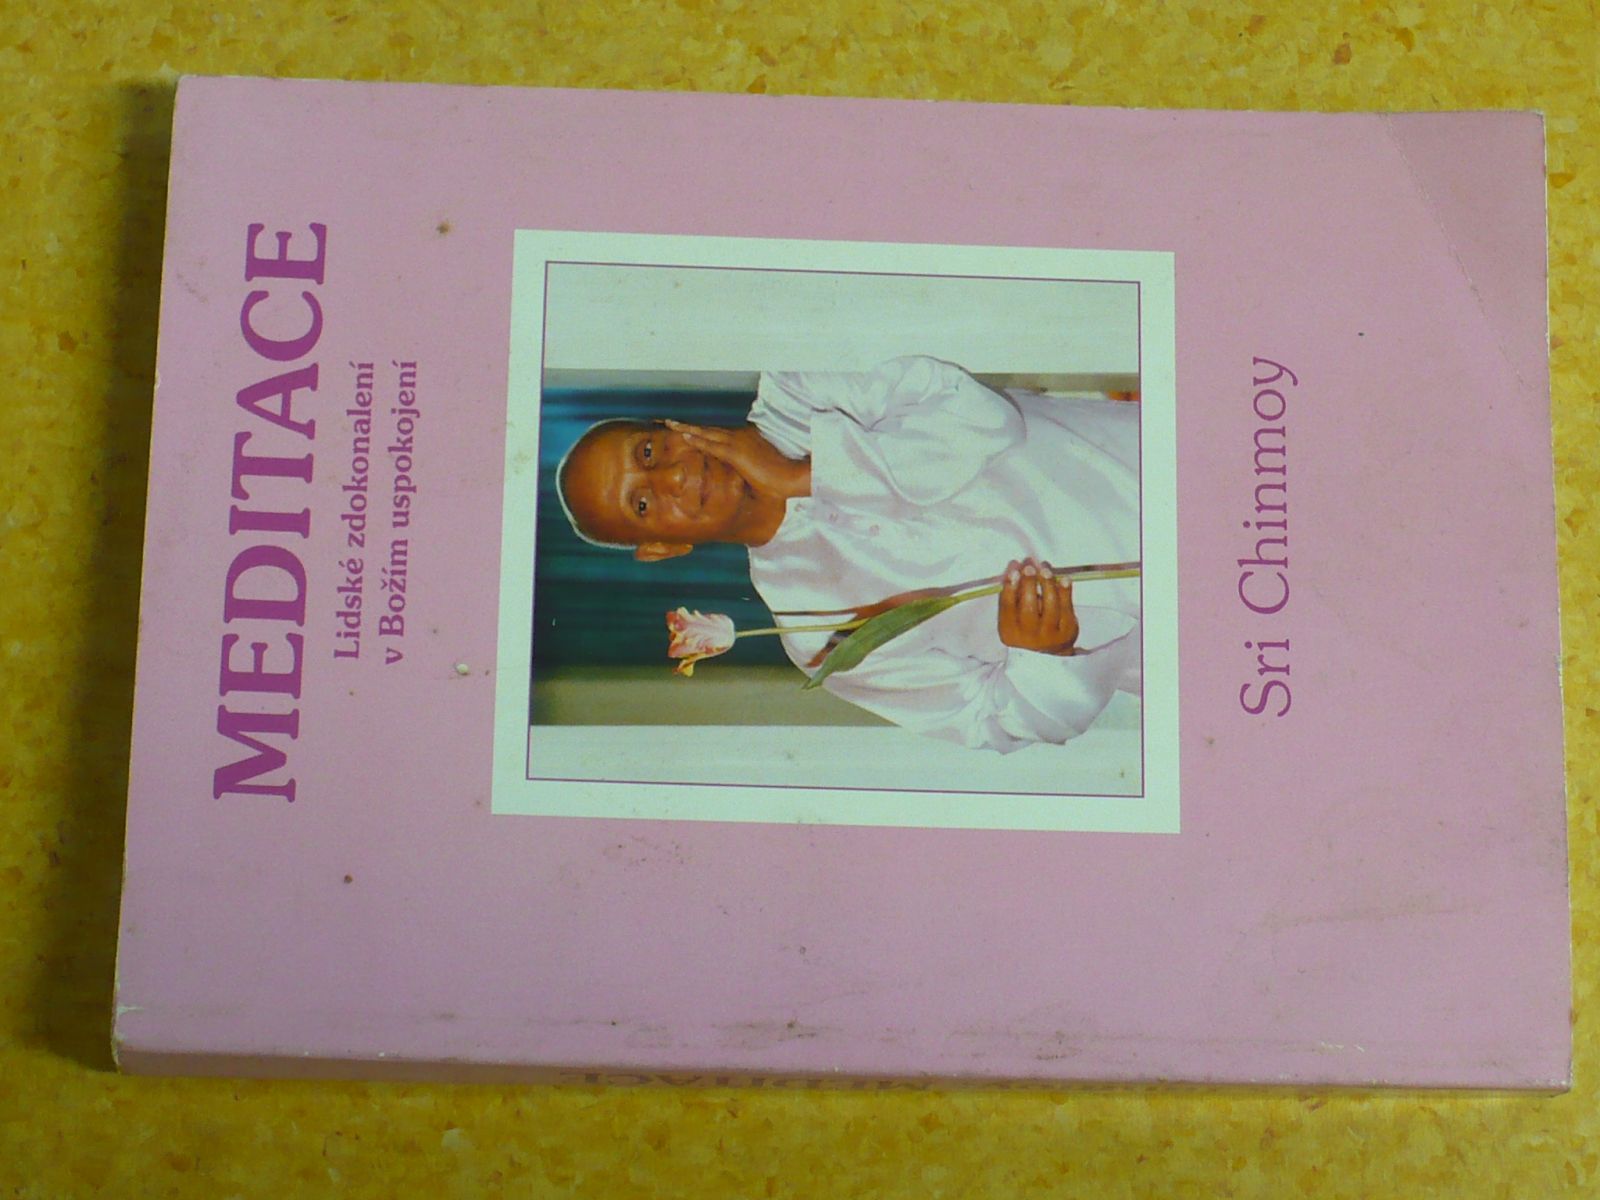 Sri Chinmoy - Meditace - Lidské zdokonalení v Božím uspokojení (1994)